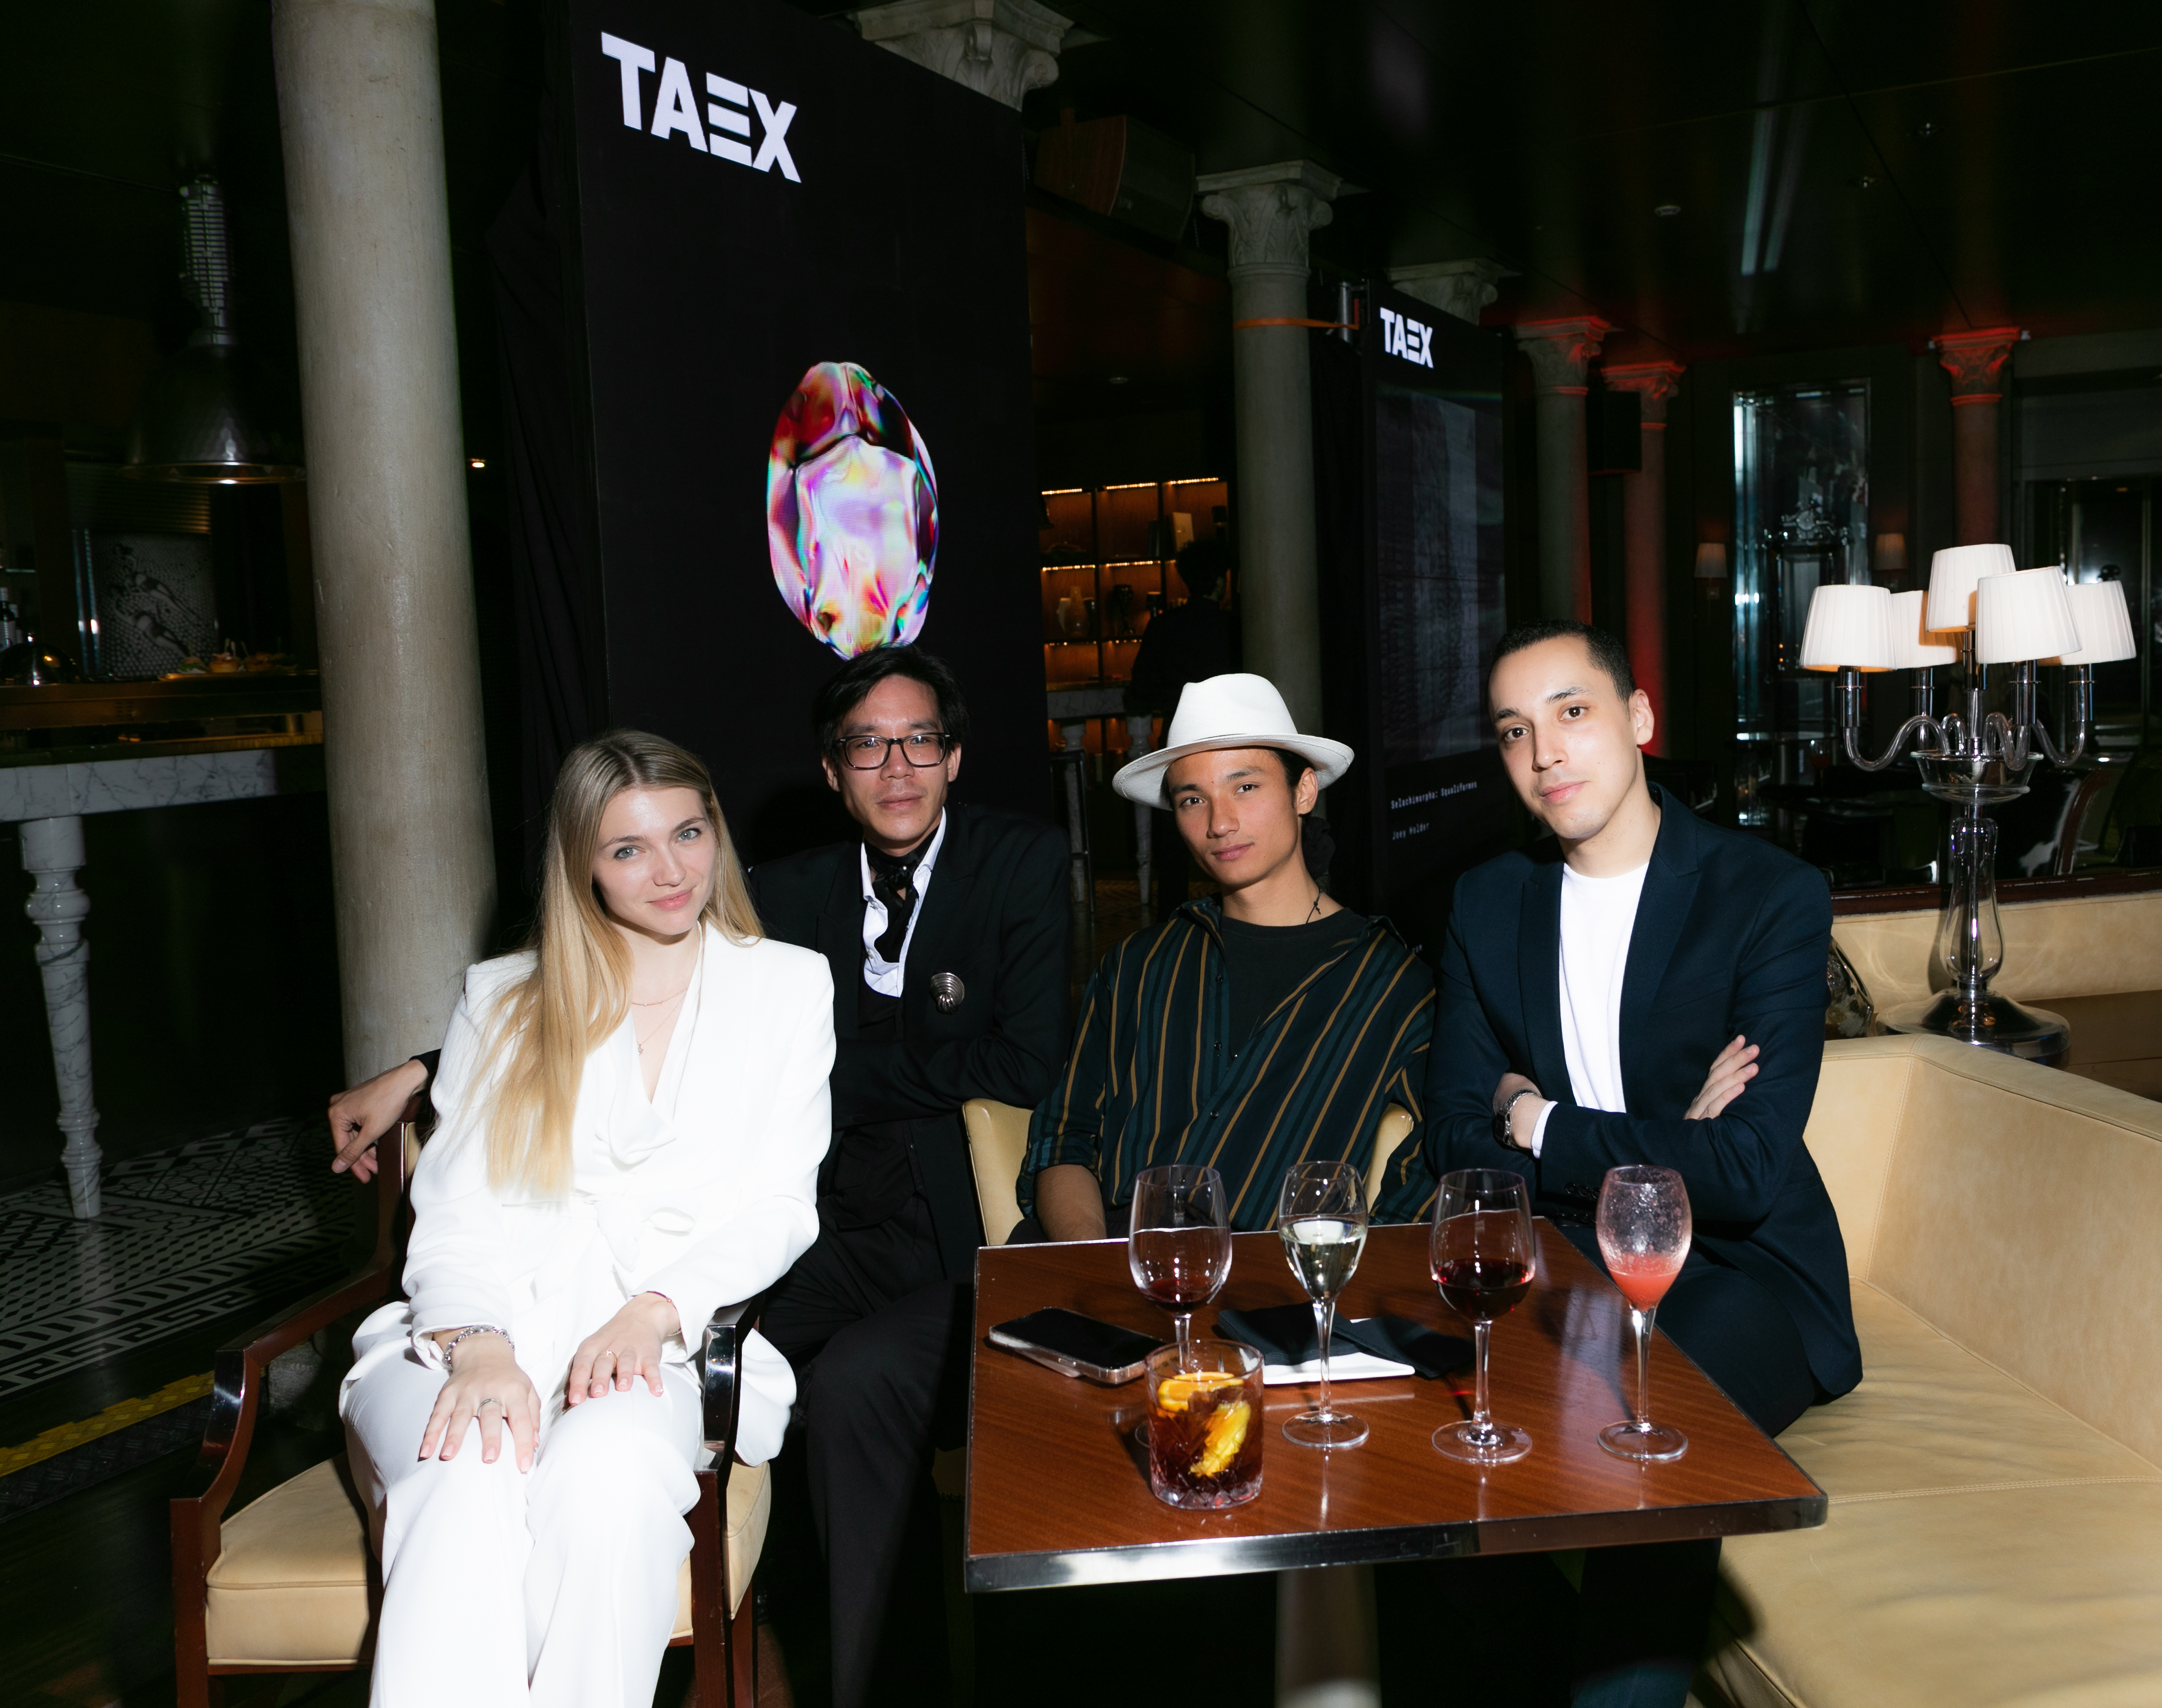 From left to right: TAEX Business Development Manager Stefanie de Regel, Theo Bellanger, Mathias Bensimon, Othmane Kandri